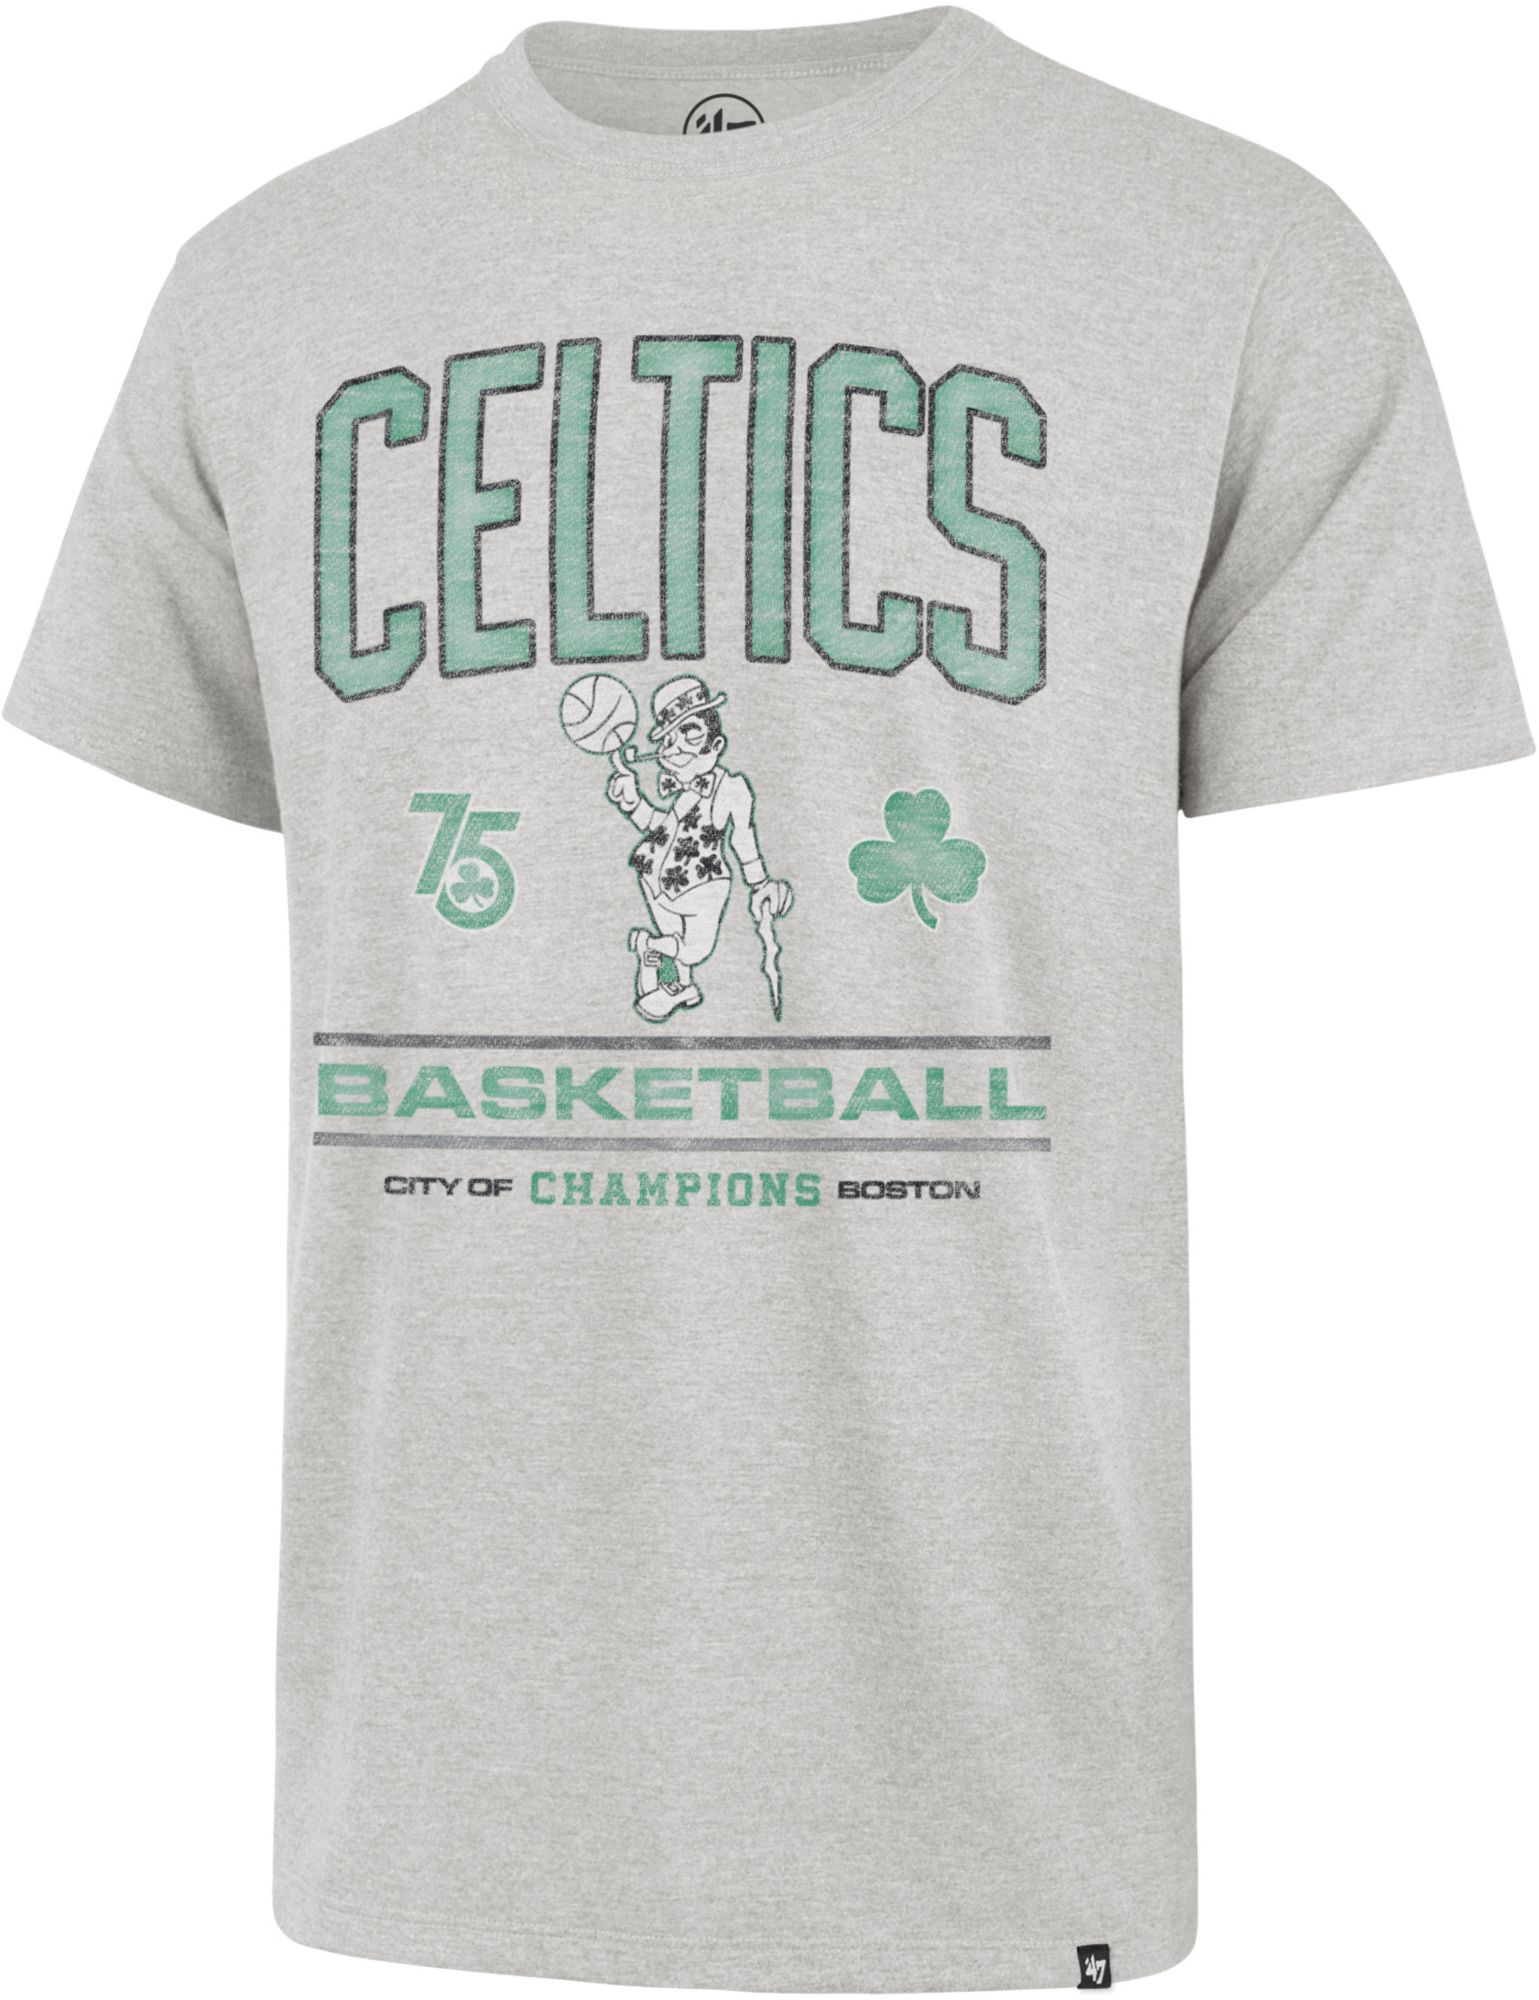 Nike Men's Boston Celtics Jayson Tatum #0 White Dri-Fit Swingman Jersey, Small